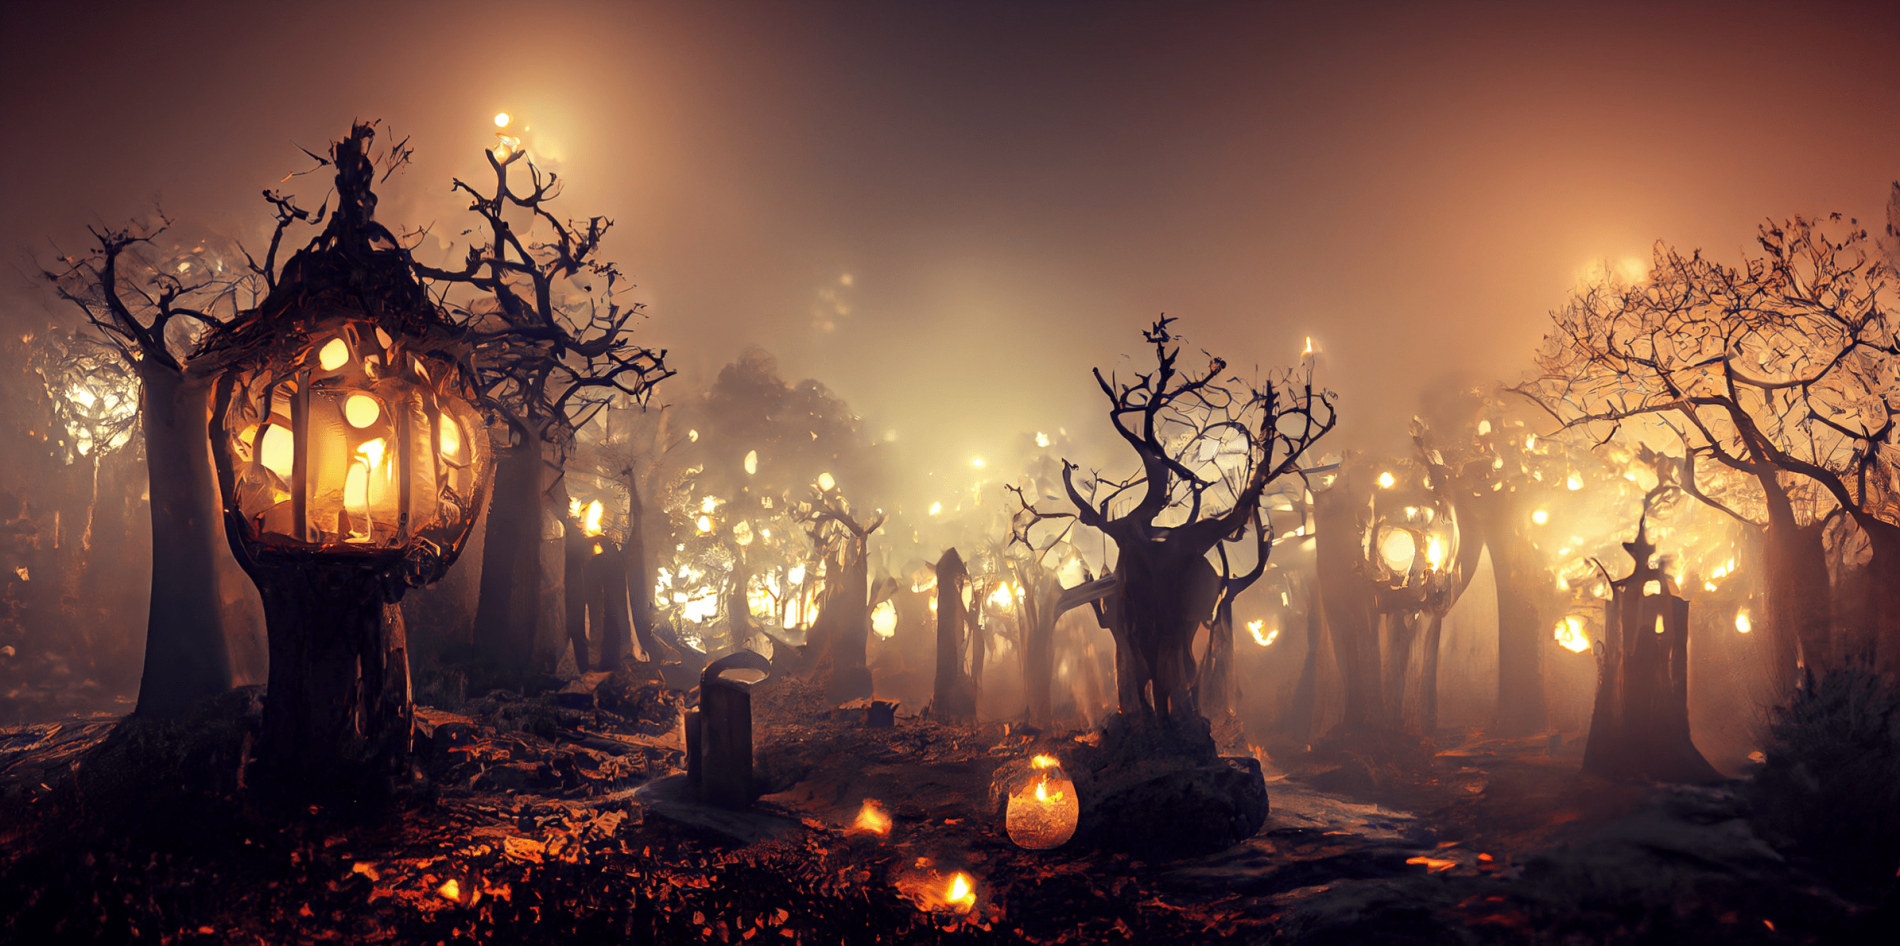 Đêm Samhain và Halloween đã đến, và nếu bạn muốn tạo không khí kỳ lạ và đặc biệt trong nhà của mình, hãy tải xuống những bức ảnh đầy ma mị và bí ẩn để trang trí cho màn hình máy tính của bạn. Một mùa Halloween cực kỳ vui tươi đang chờ đón bạn!